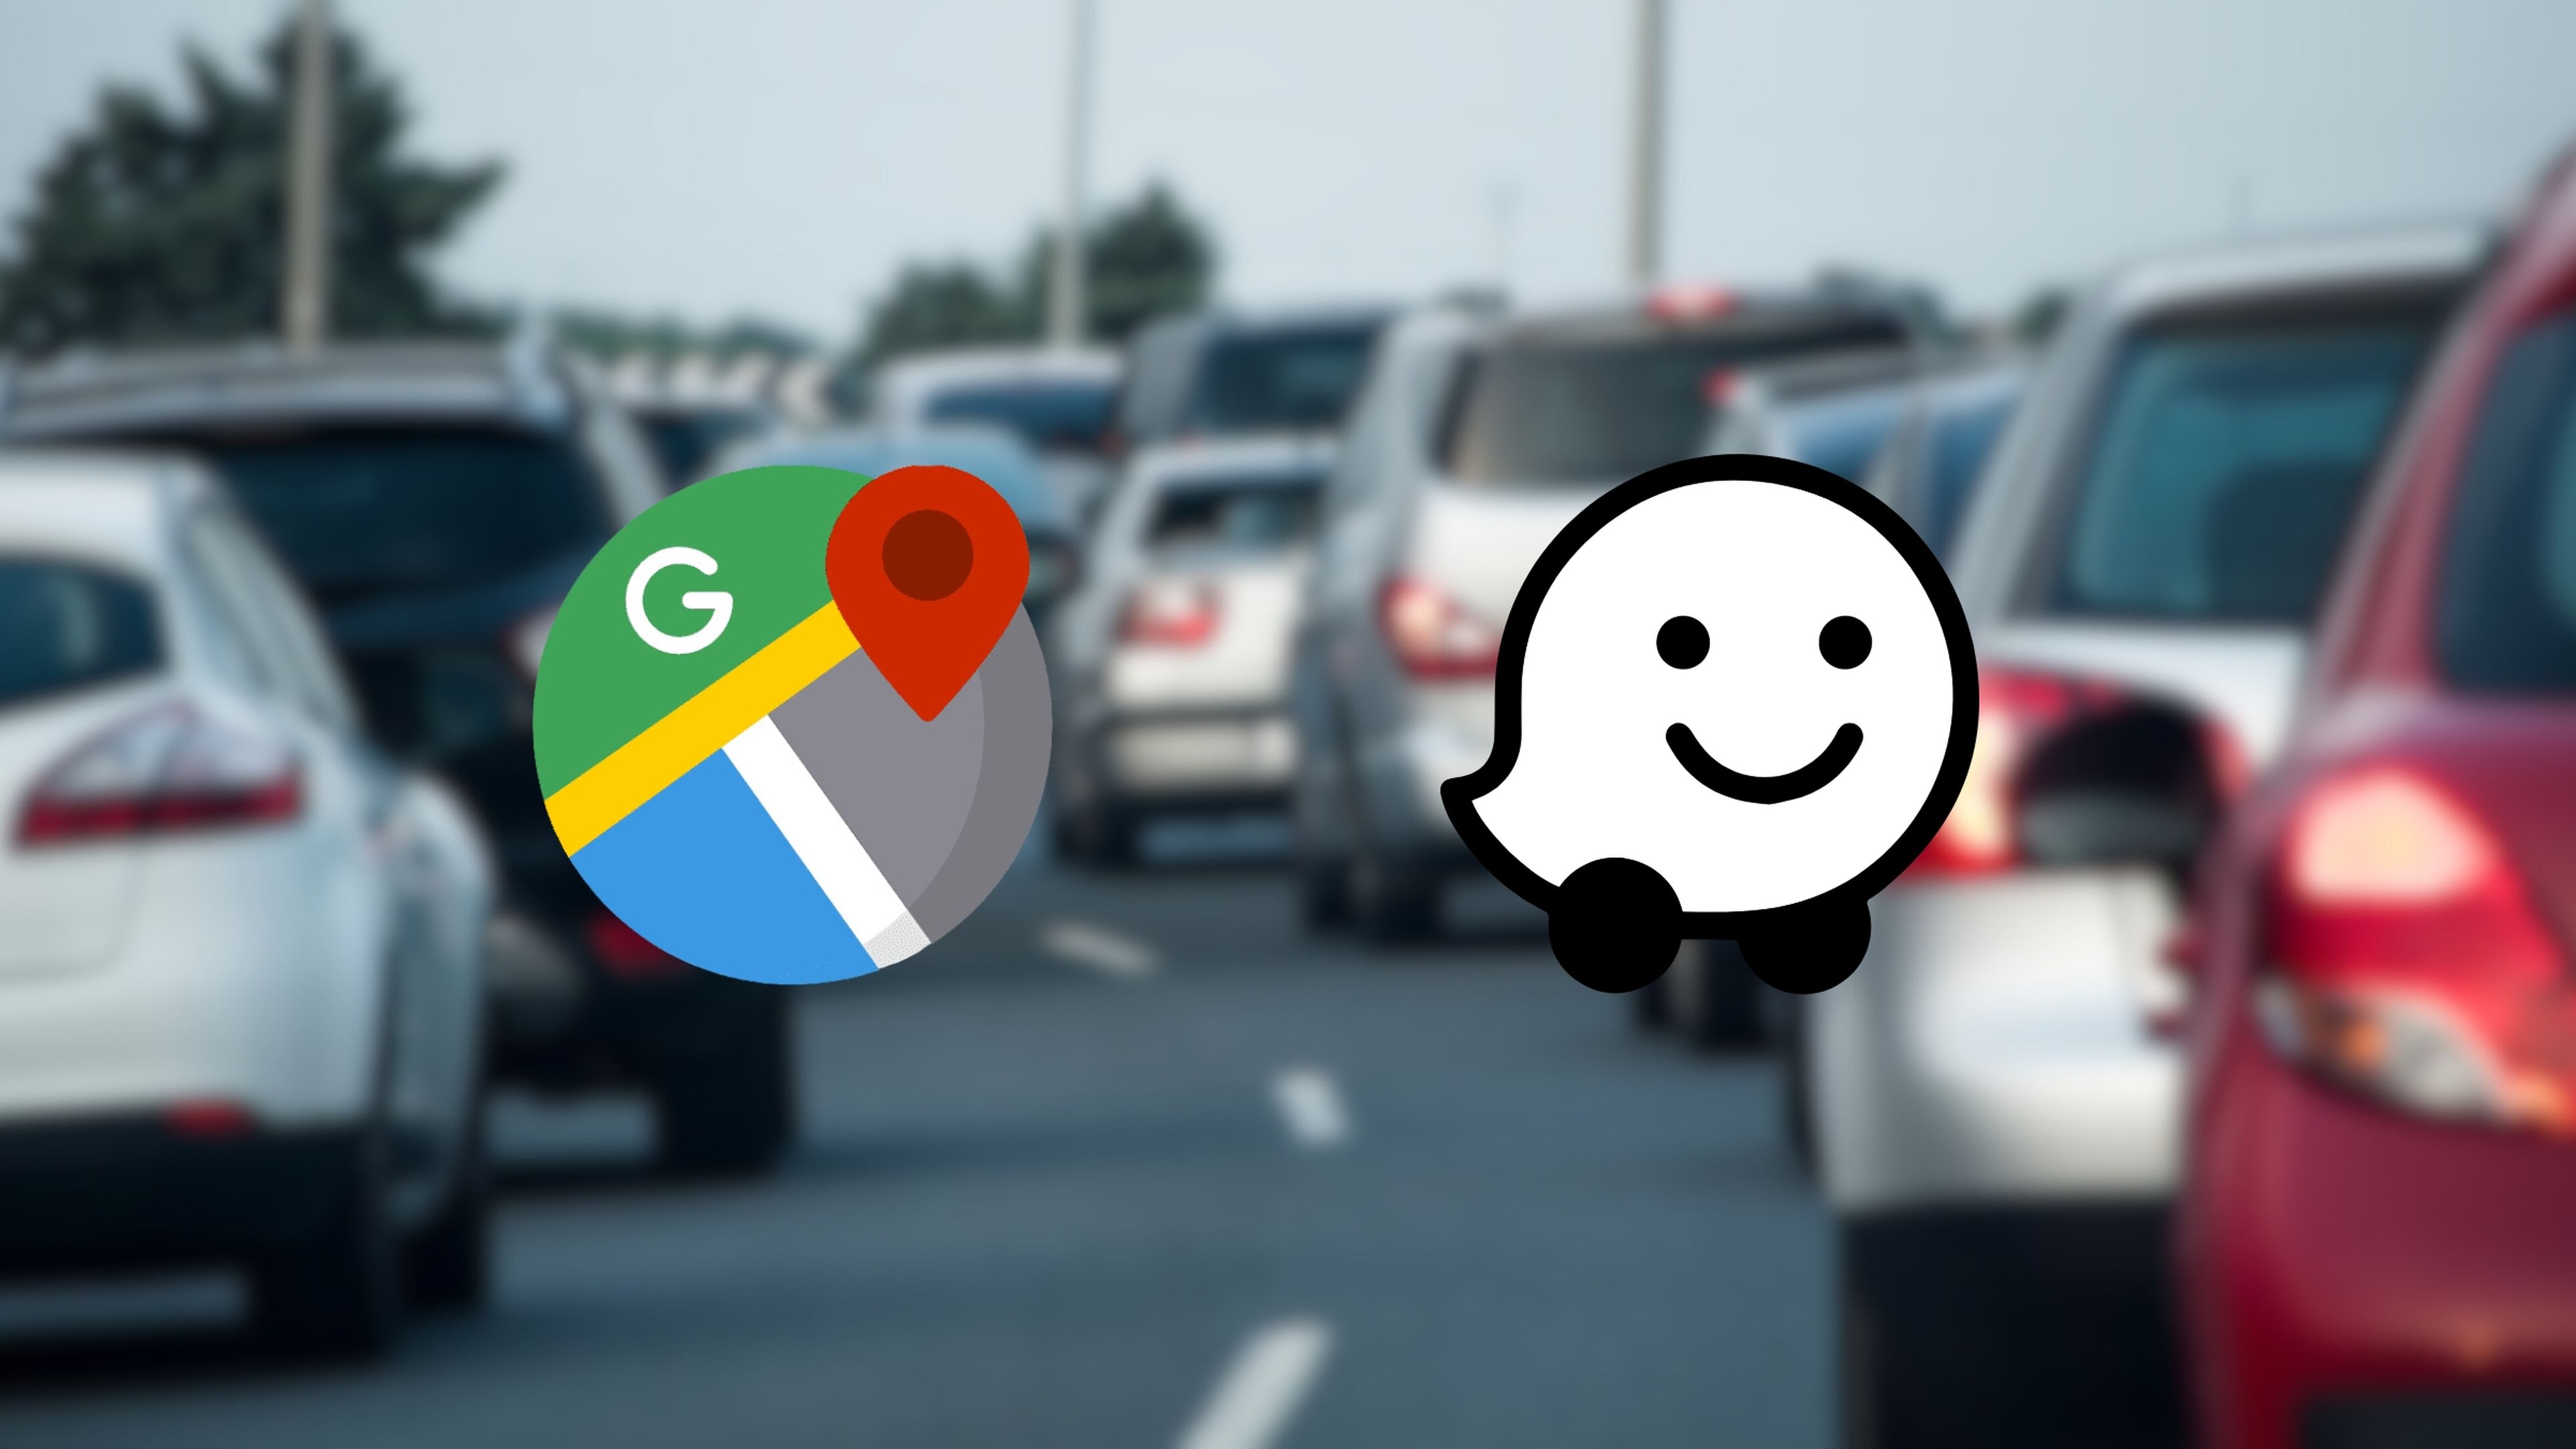 Qué es mejor para evitar atascos: Google Maps o Waze